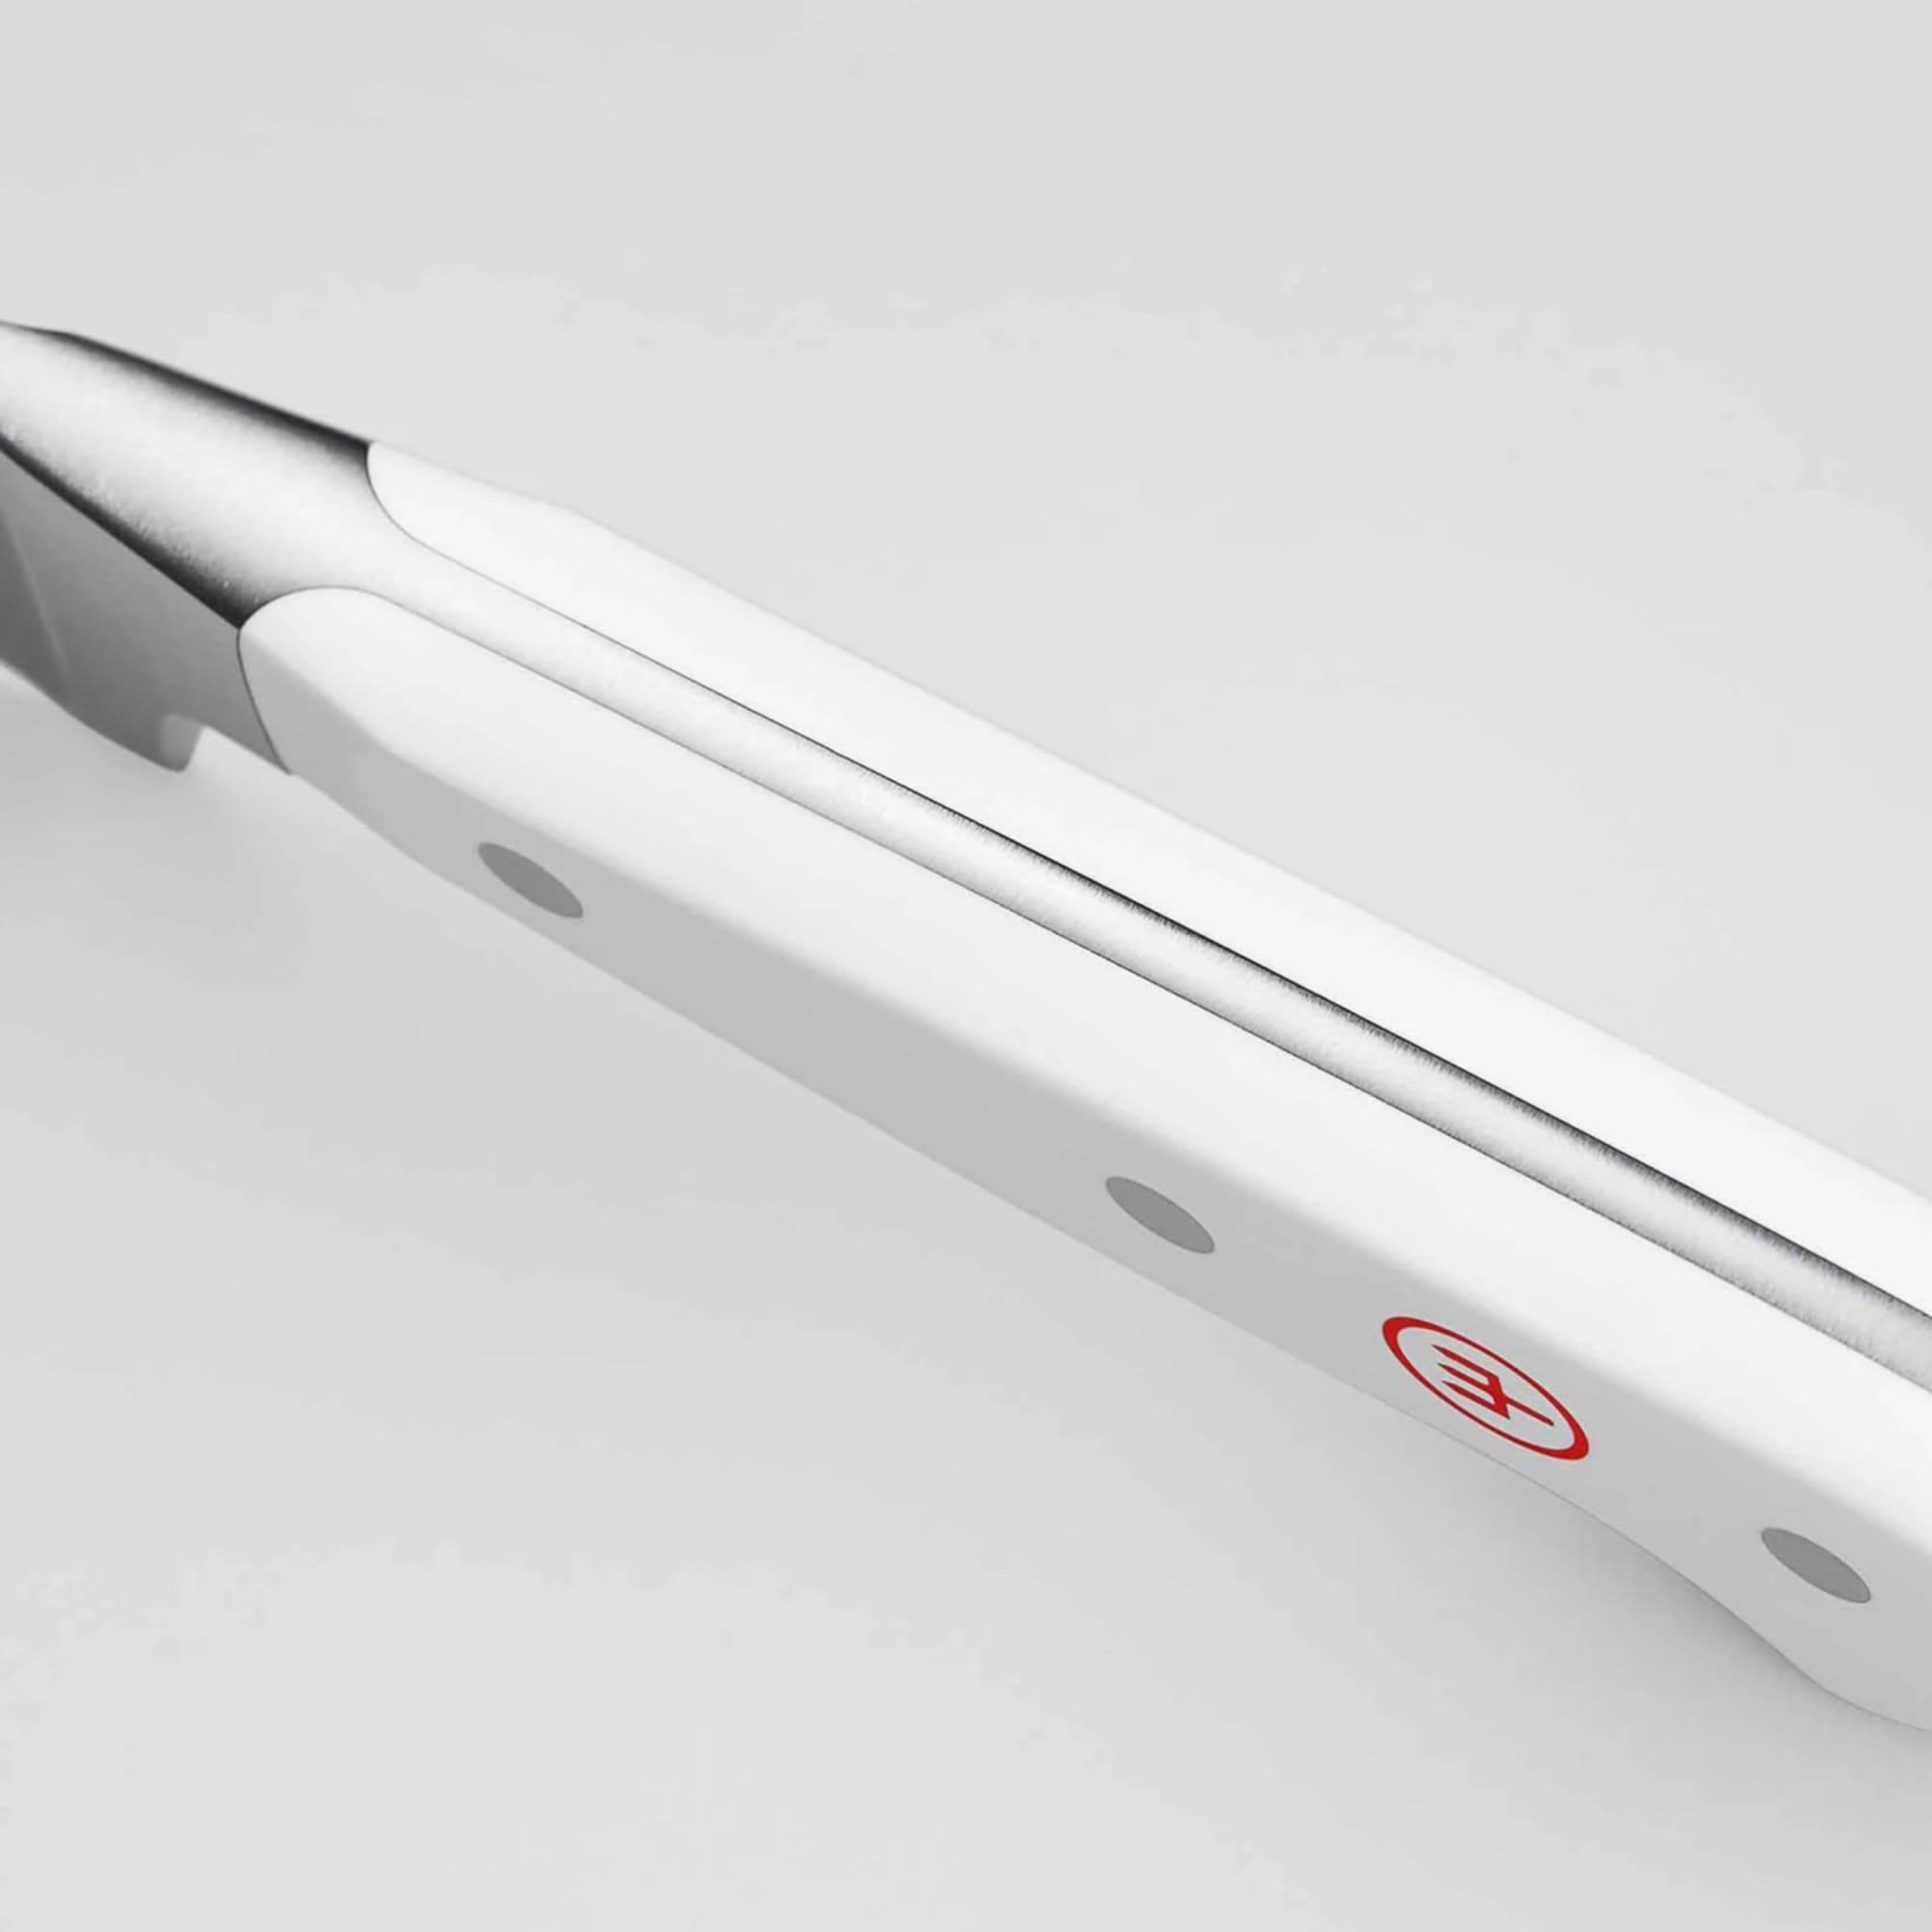 Wusthof Classic White 6pc Design Knife Block Set with Santoku Knife Image 6